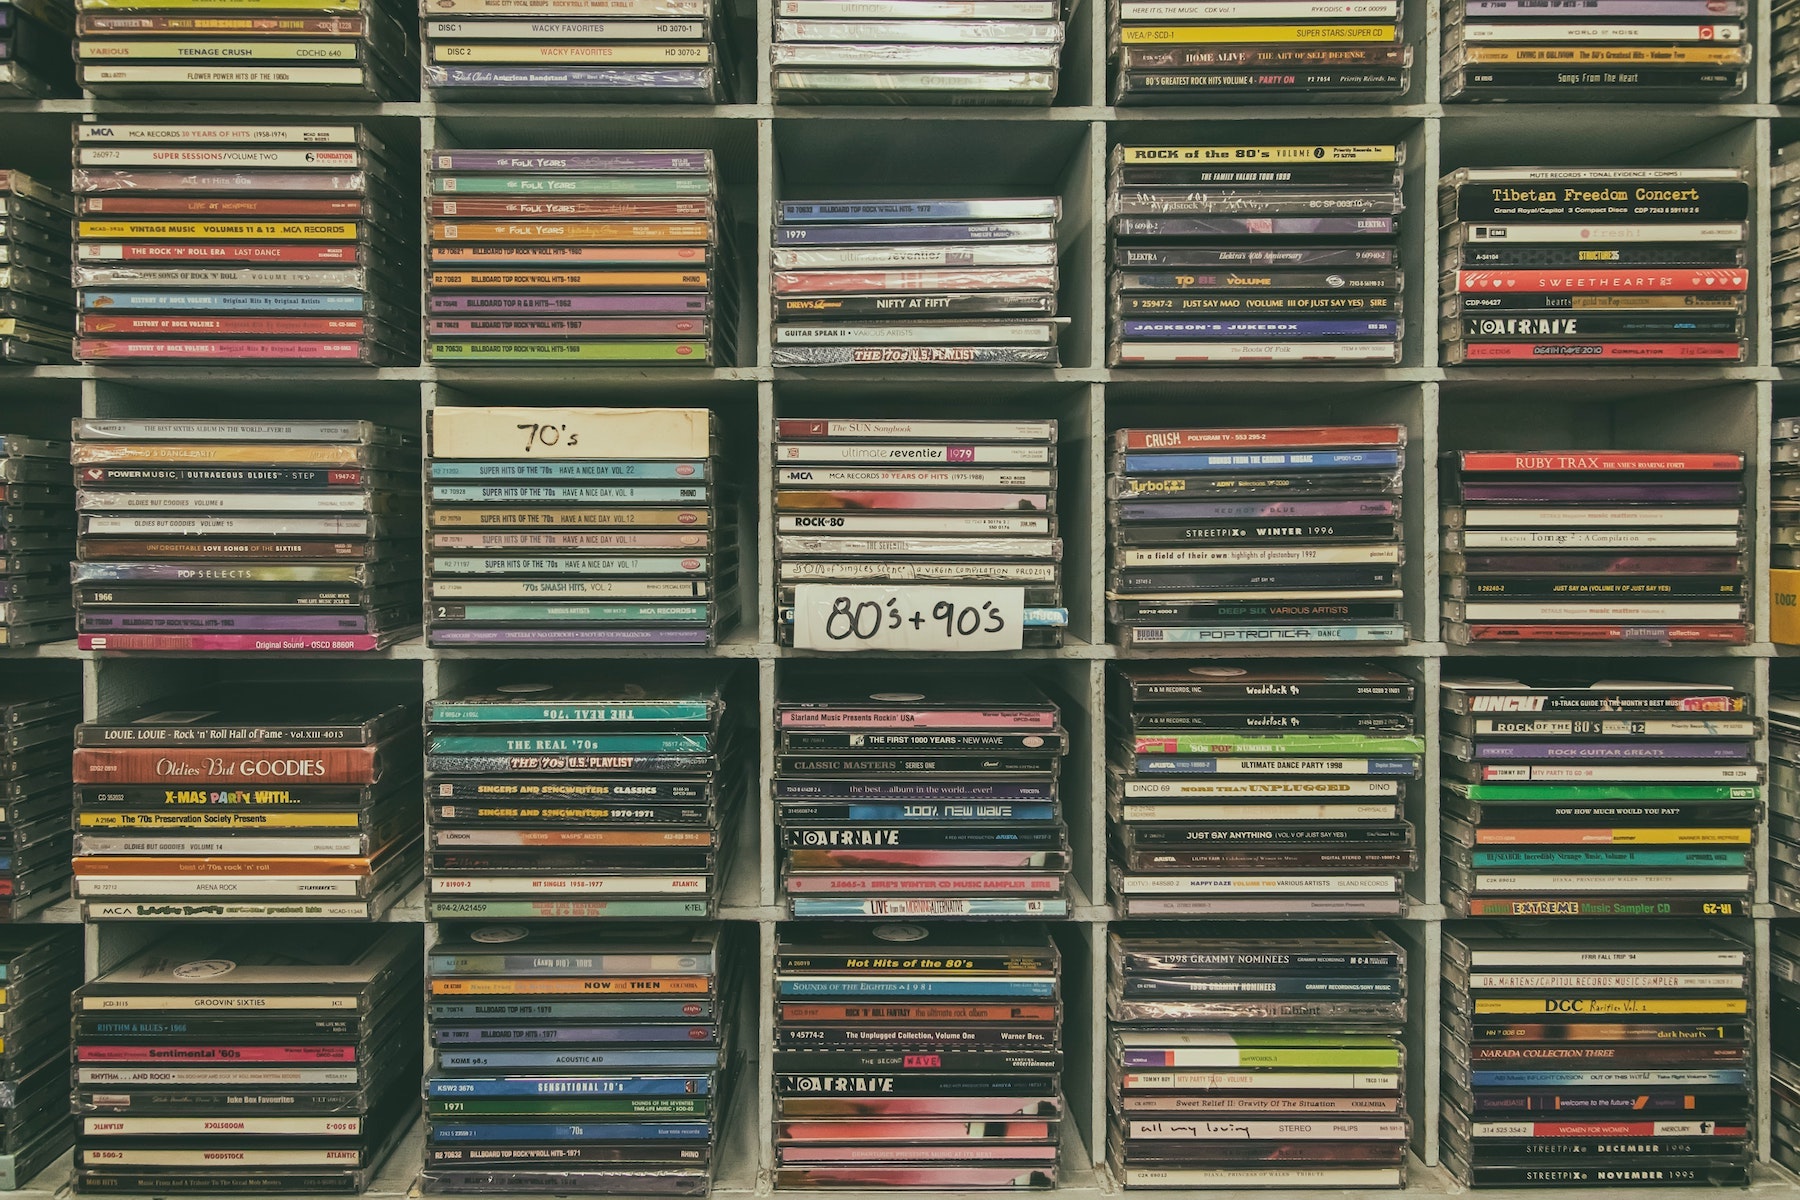 Vari cd sistemati dentro uno scaffale divisi tra anni 70, 80 e 90. Dovessi scegliere, meglio cd o vinile?